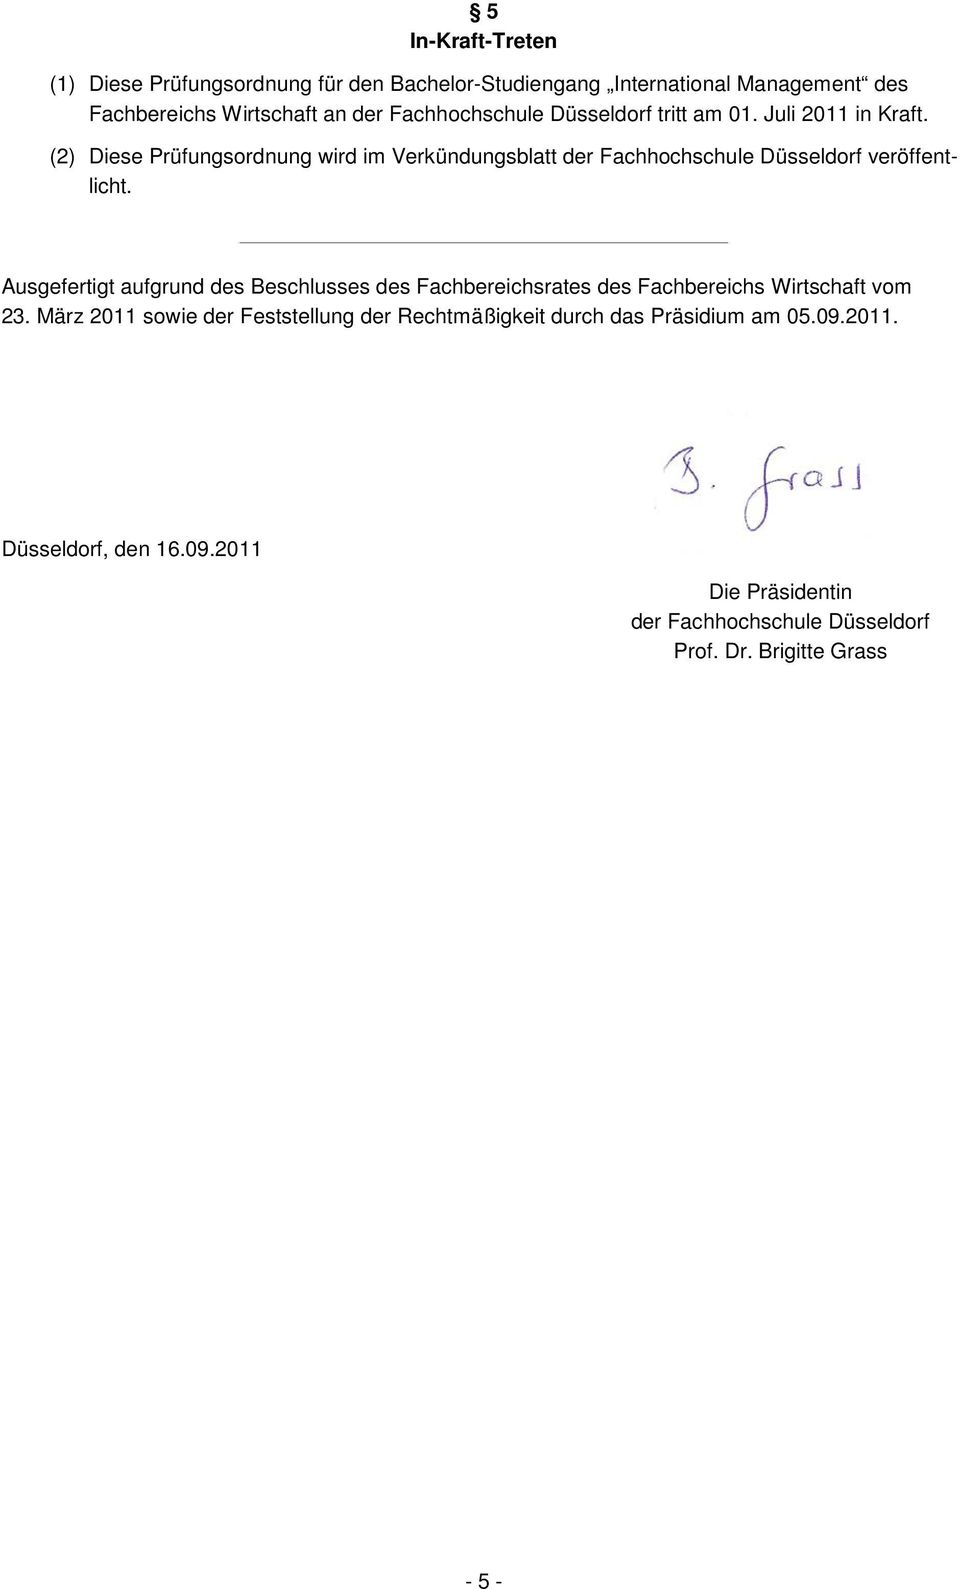 (2) Diese Prüfungsordnung wird im Verkündungsblatt der Fachhochschule Düsseldorf veröffentlicht.